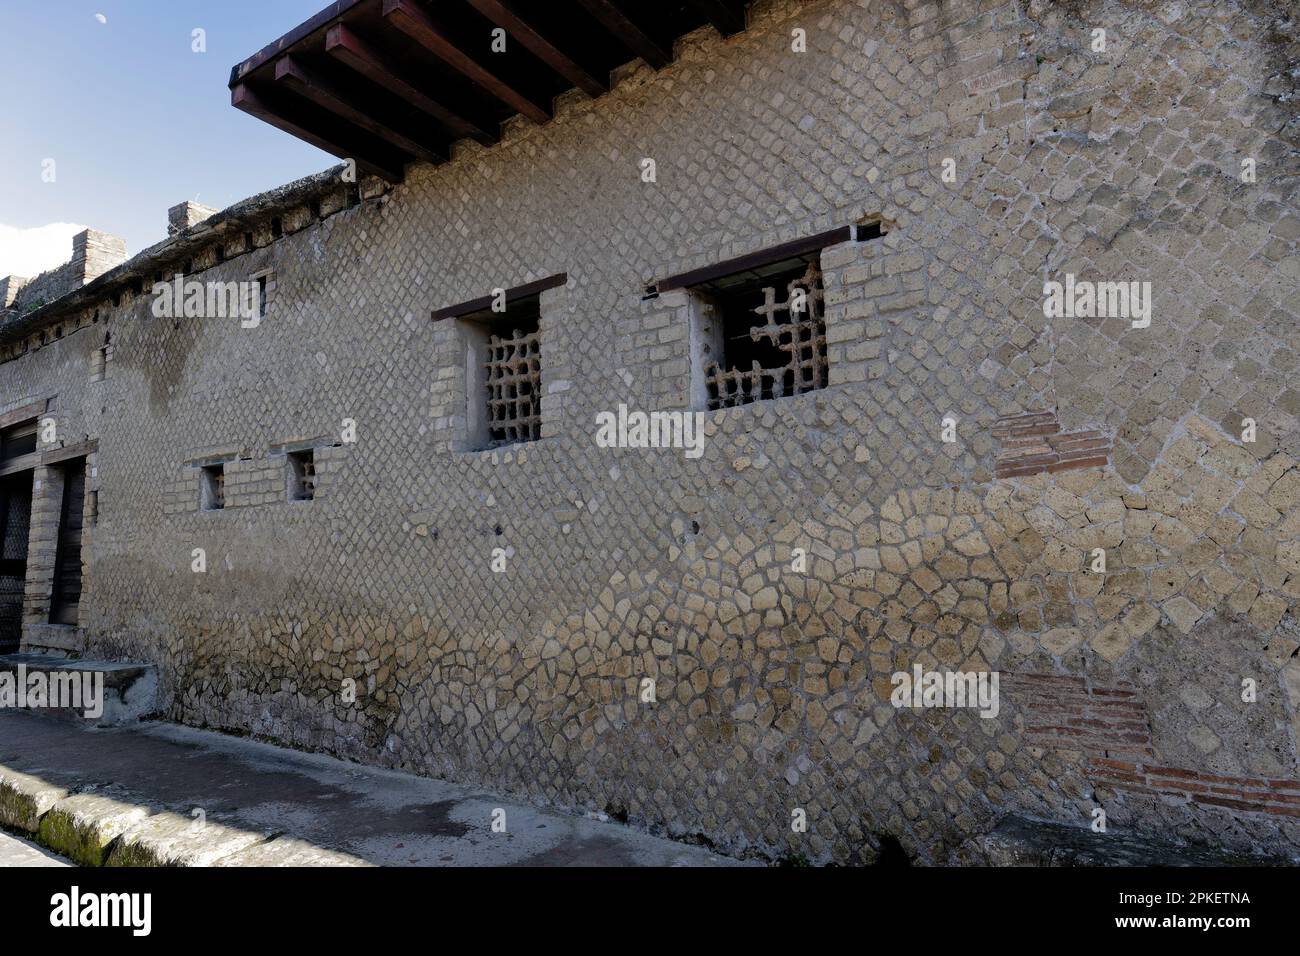 Ces grils ont survécu à l'éruption du Vésuve à Herculanum, en Italie Banque D'Images